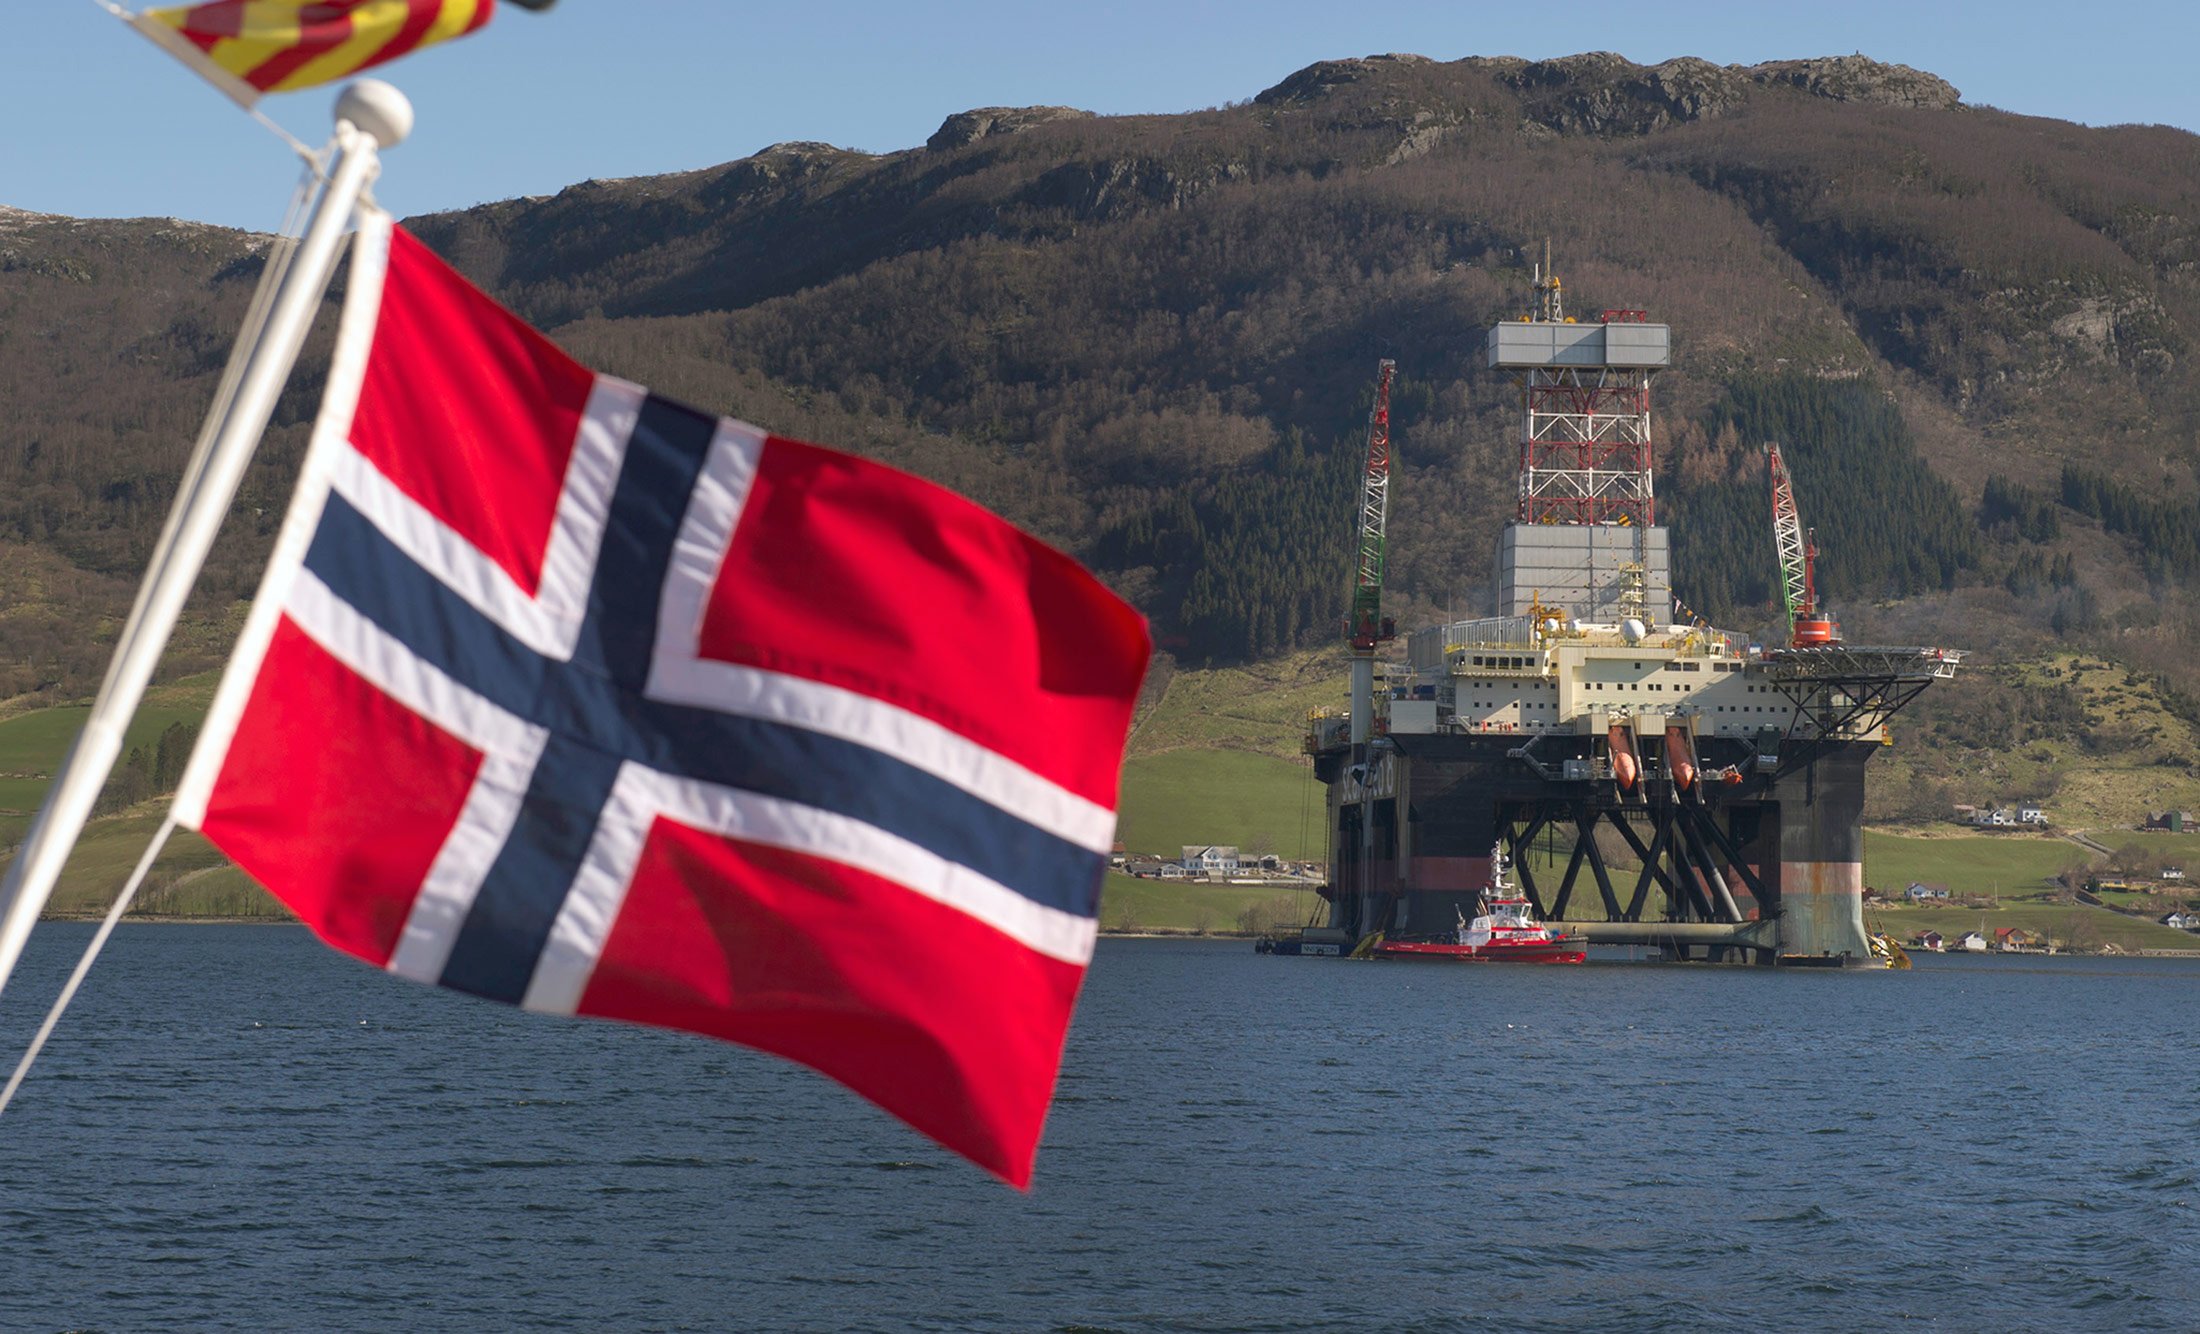 Norwayjpg - توافق با افزایش دستمزد کارکنان میدان های نفتی نروژ و پایان اعتصاب ده روزه!